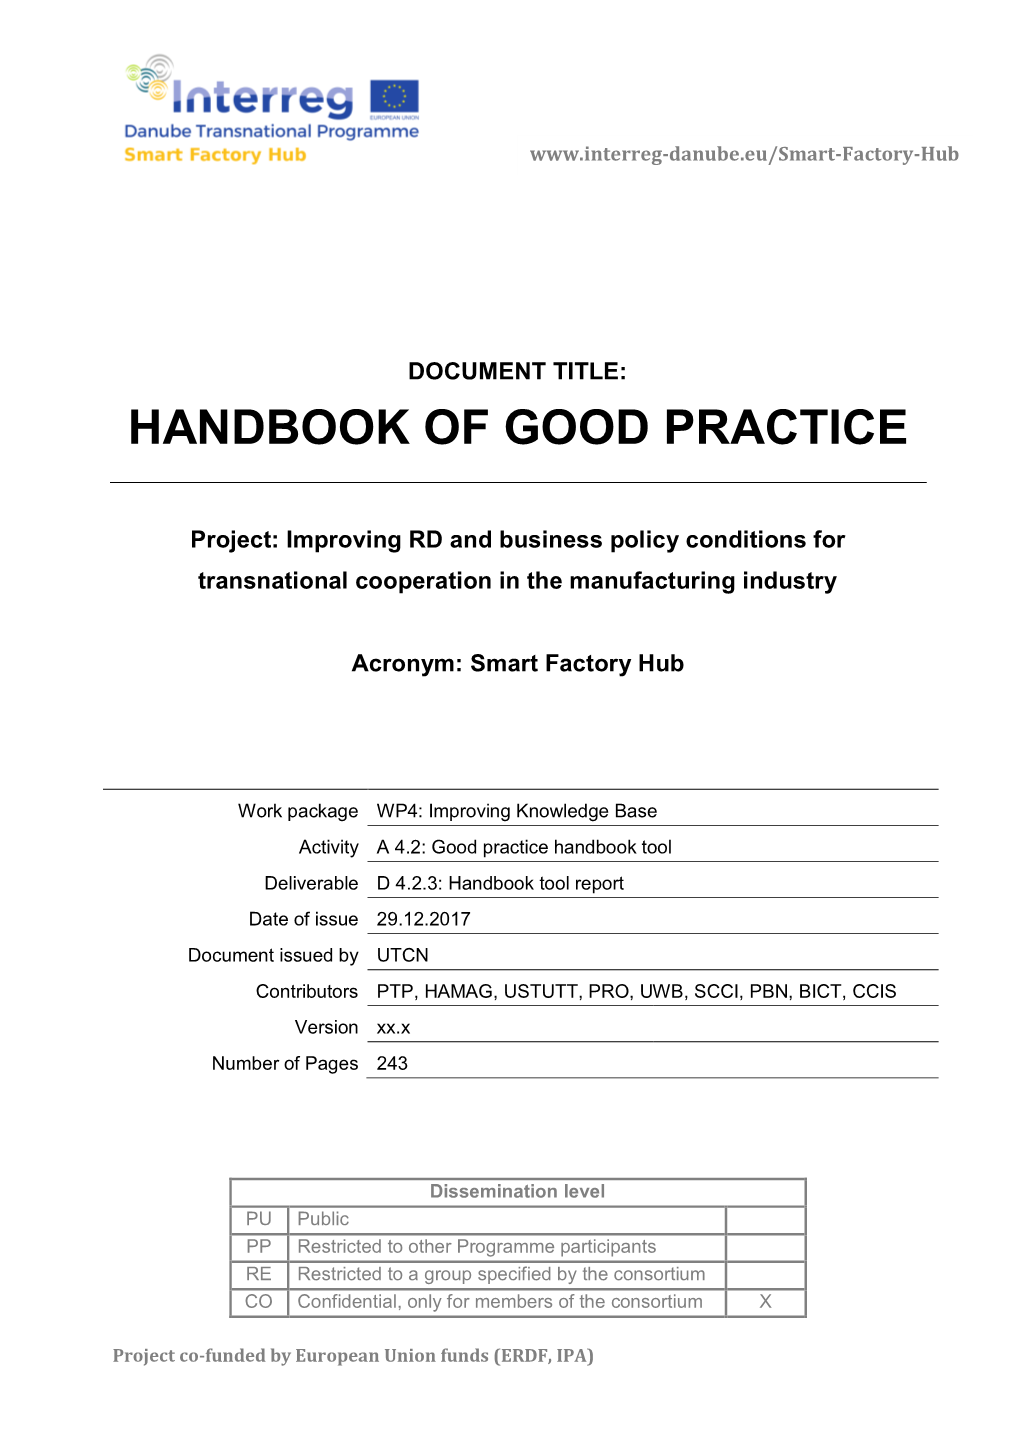 Handbook of Good Practice